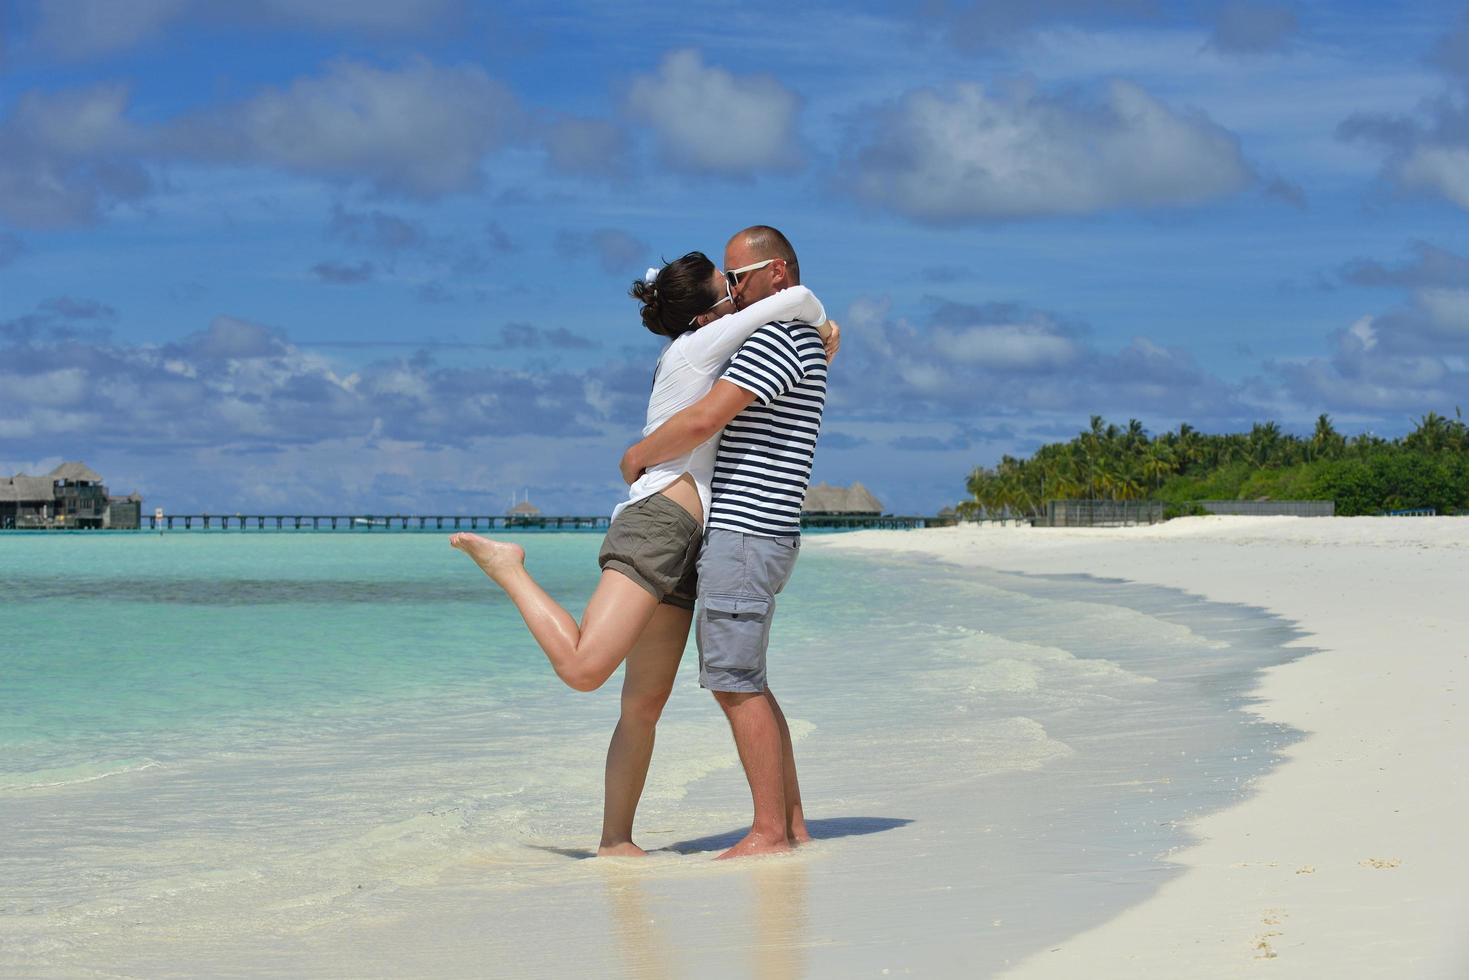 heureux jeune couple en vacances d'été s'amuser et se détendre à la plage photo